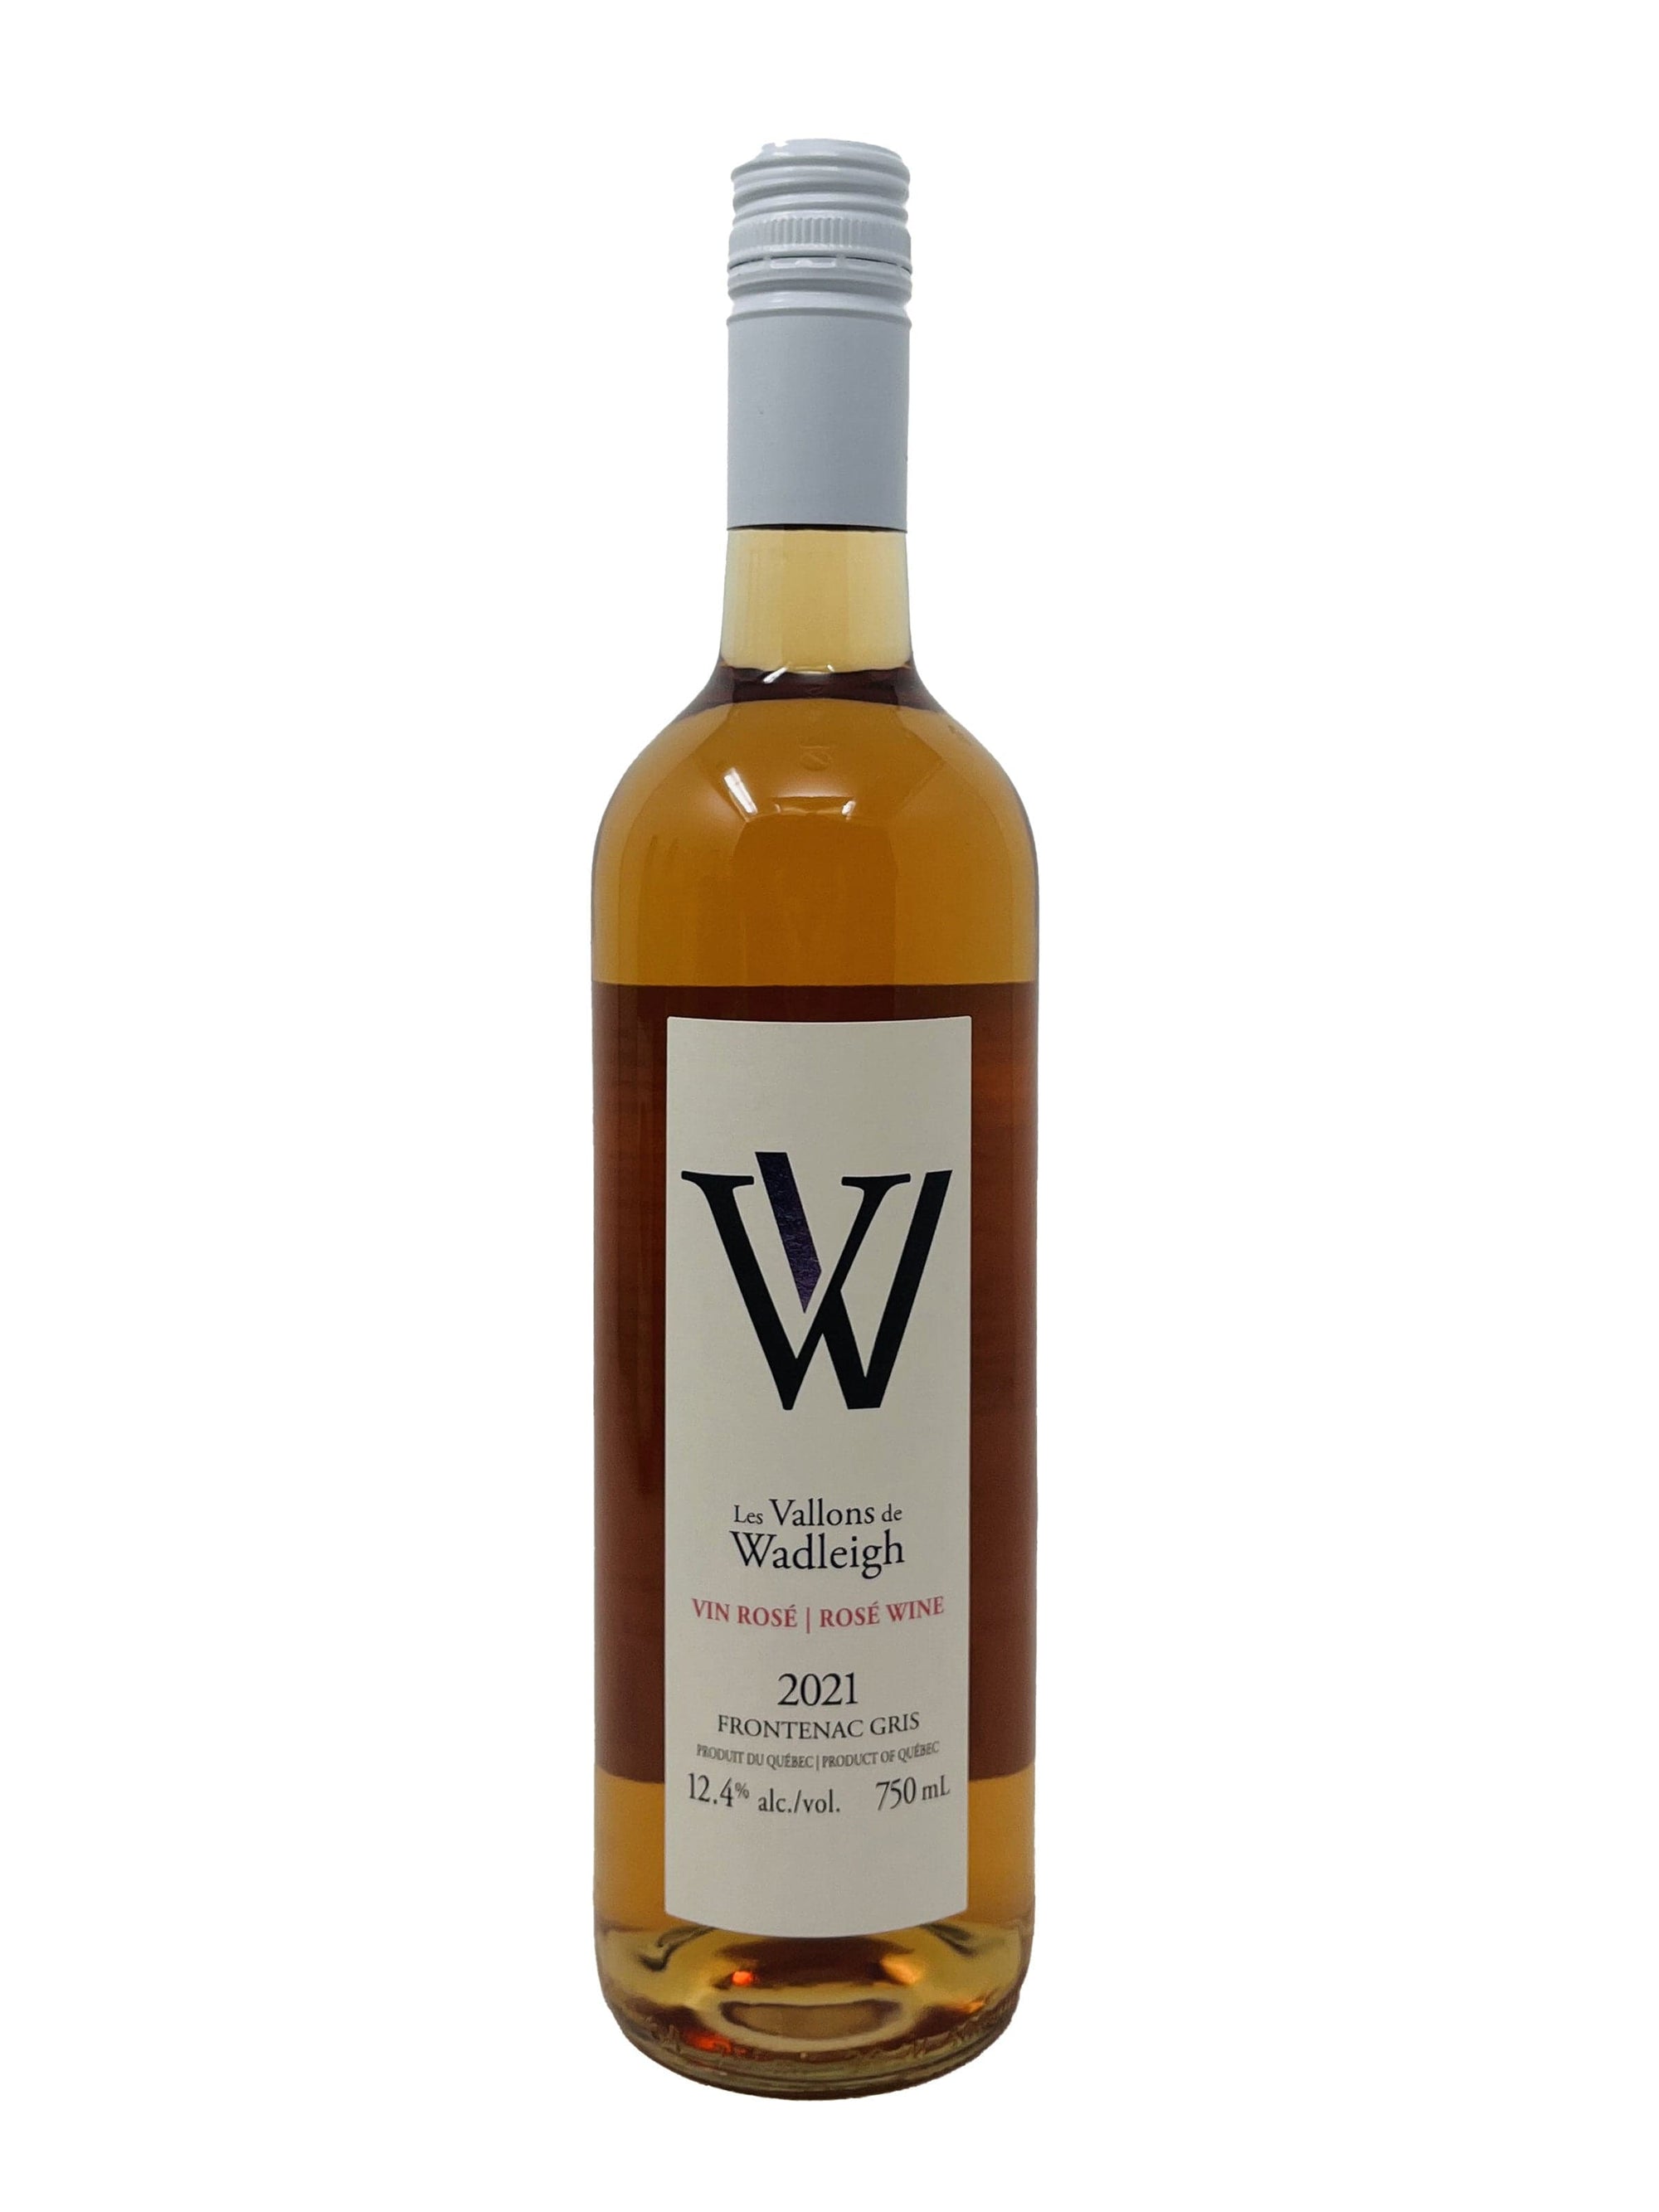 Les Vallons de Wadleigh Vin W Rosé 2021 - Vin rosé des Vallons de Wadleigh